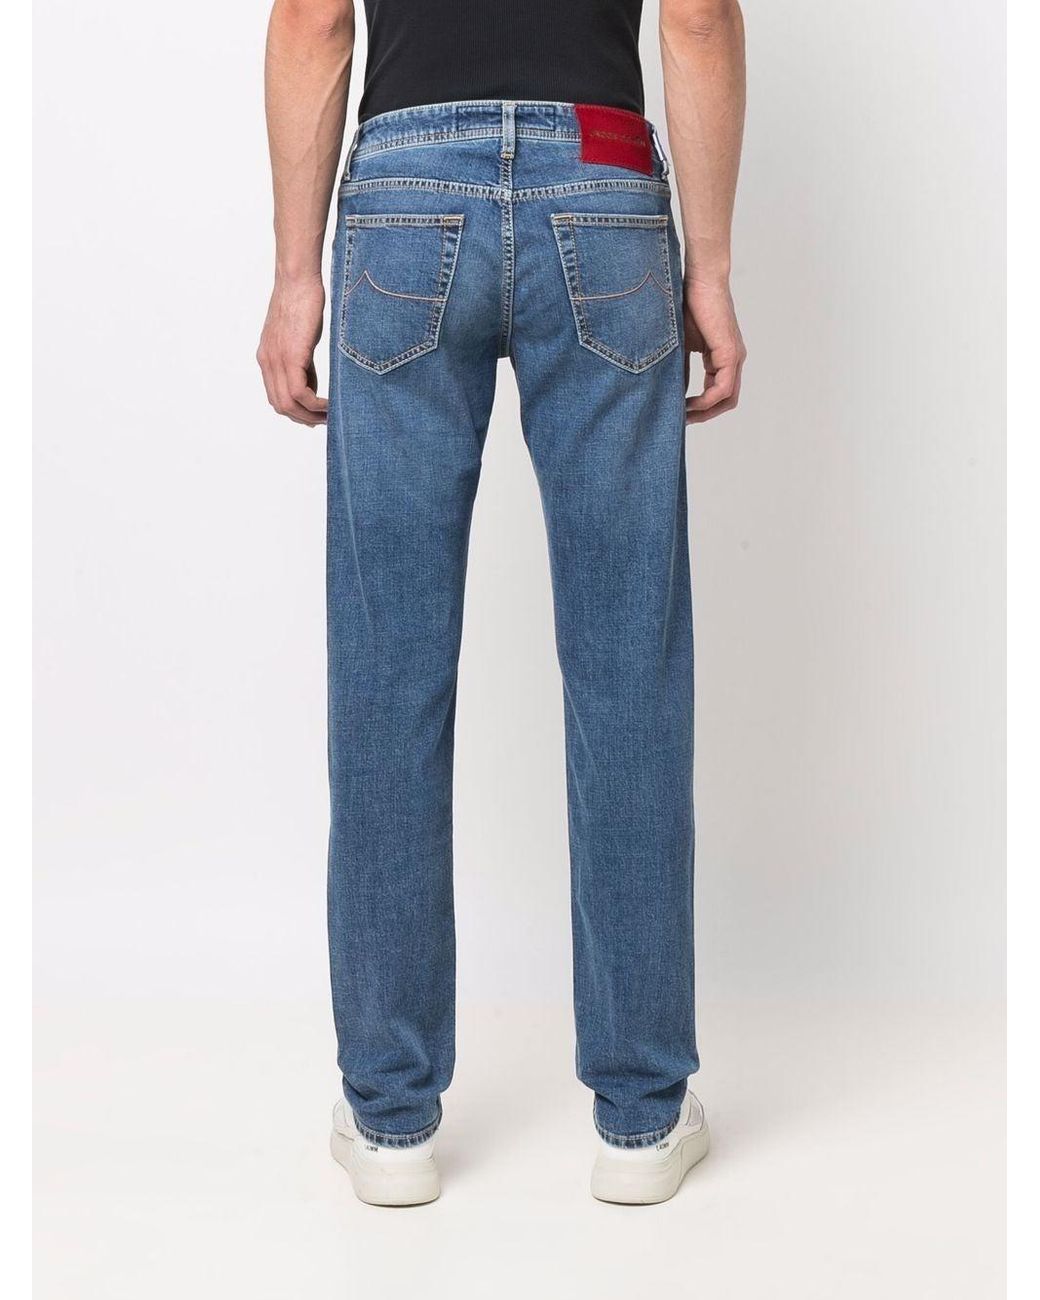 Jacob Cohen Cotton S-d Jeans & Pant in Blue for Men - Save 27% | Lyst